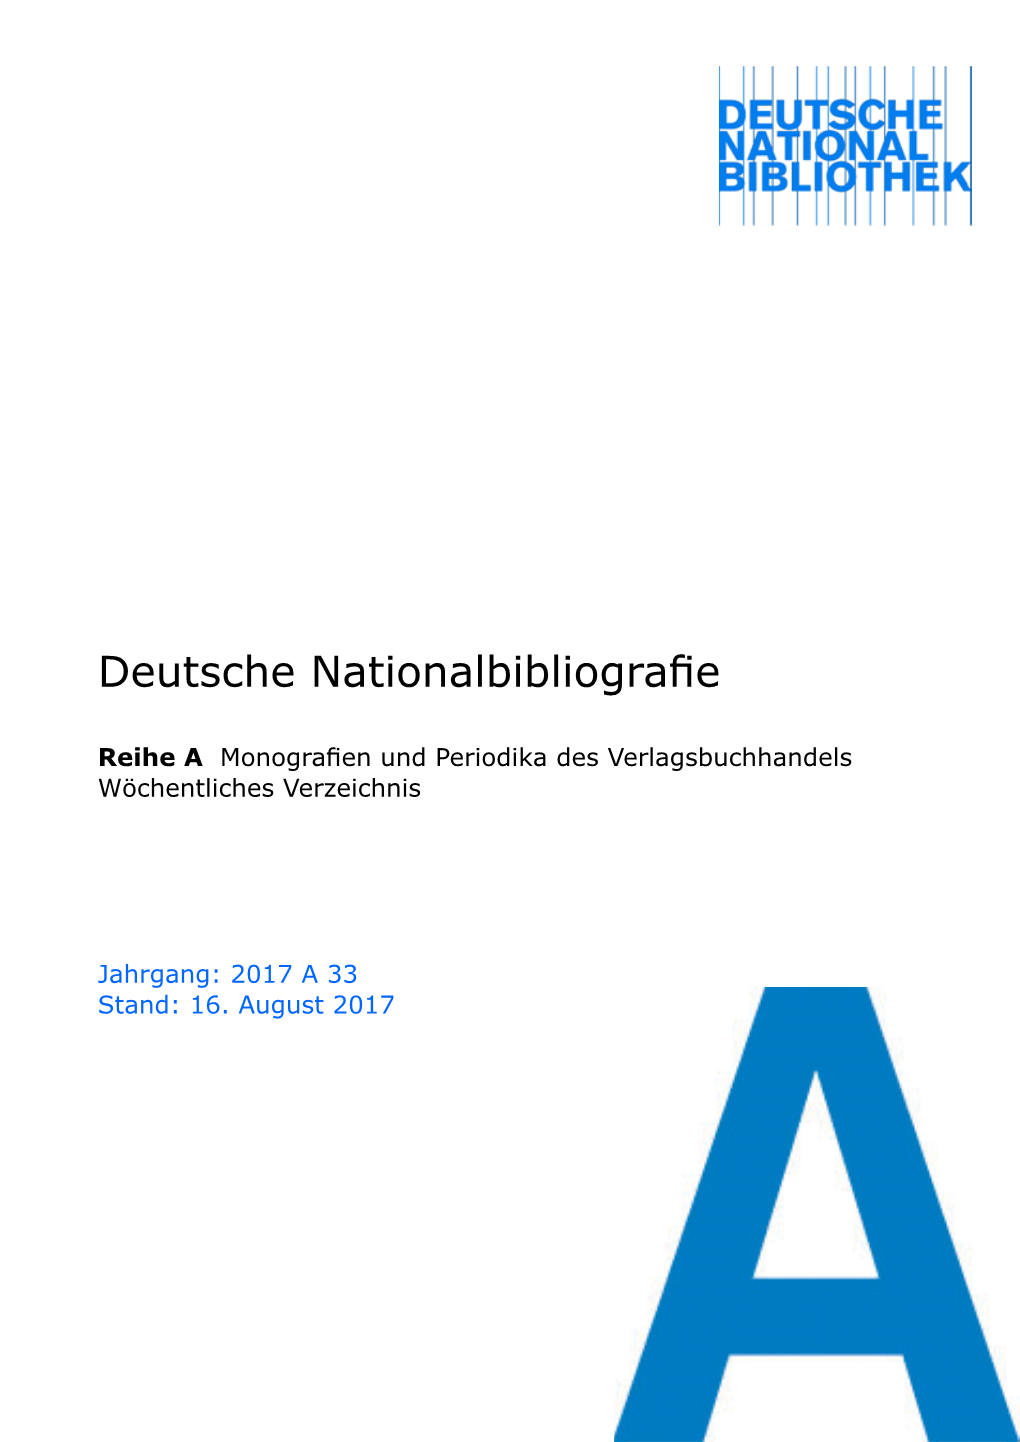 Deutsche Nationalbibliografie 2017 a 33